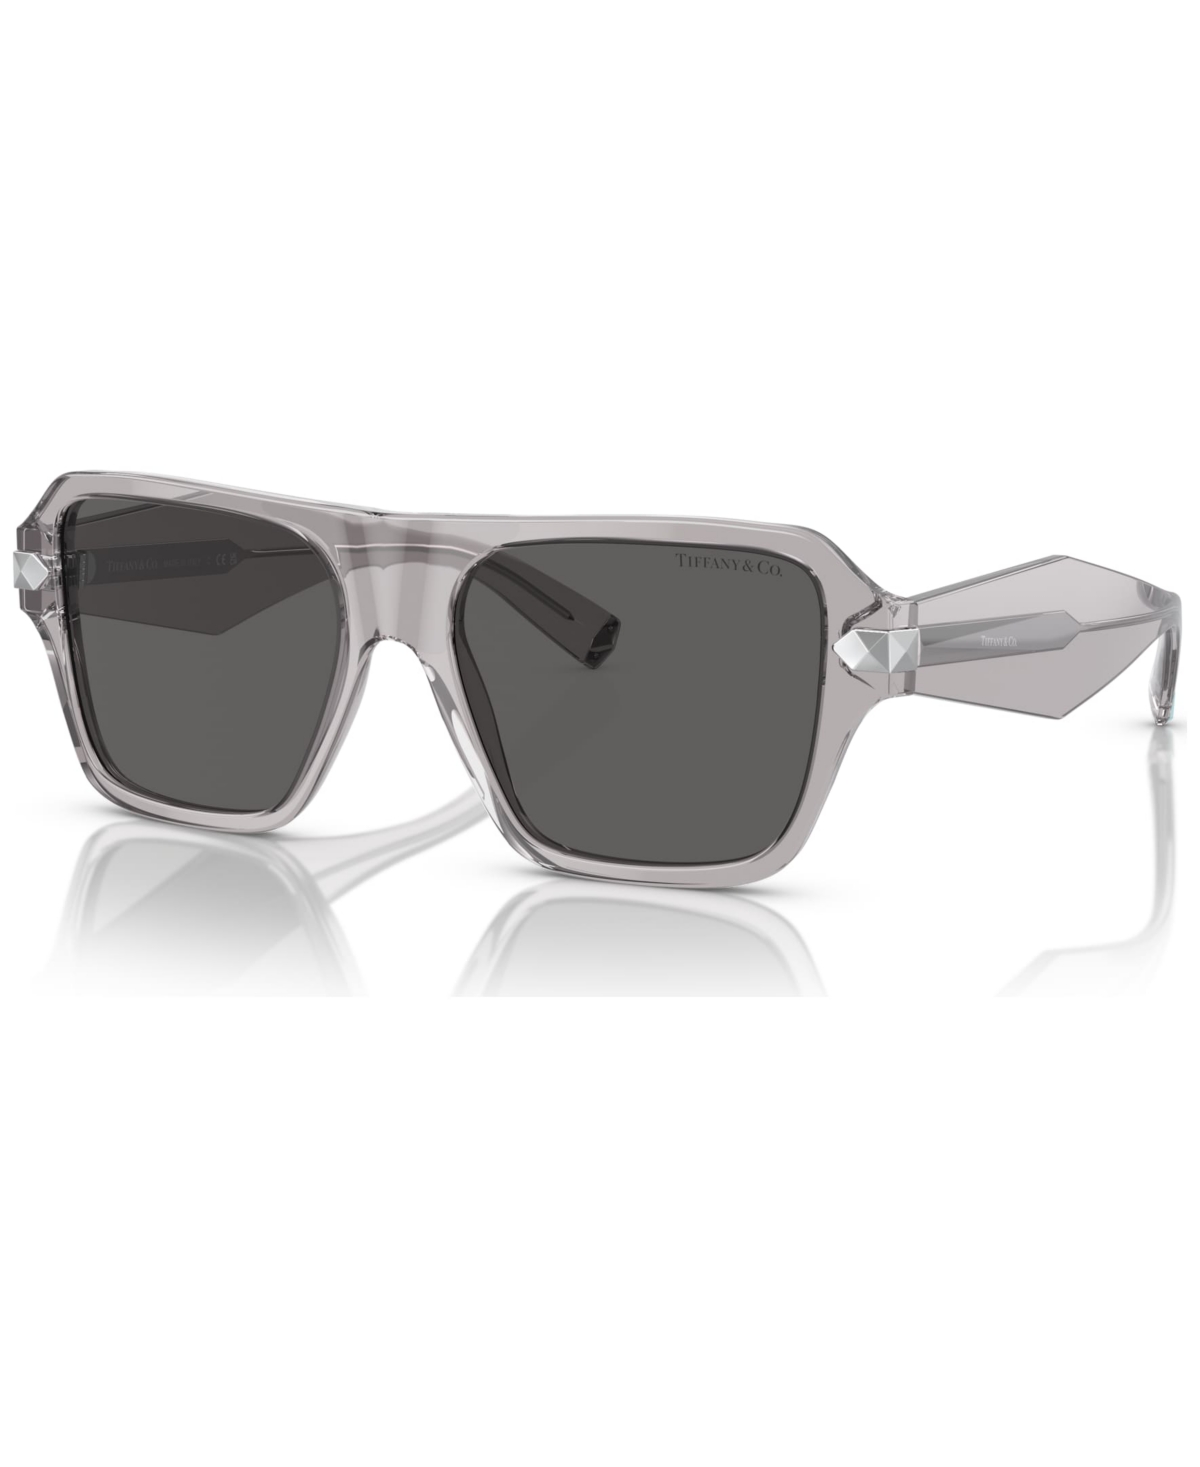 Tiffany & Co Women's Sunglasses, Tf4204 In Crystal Gray